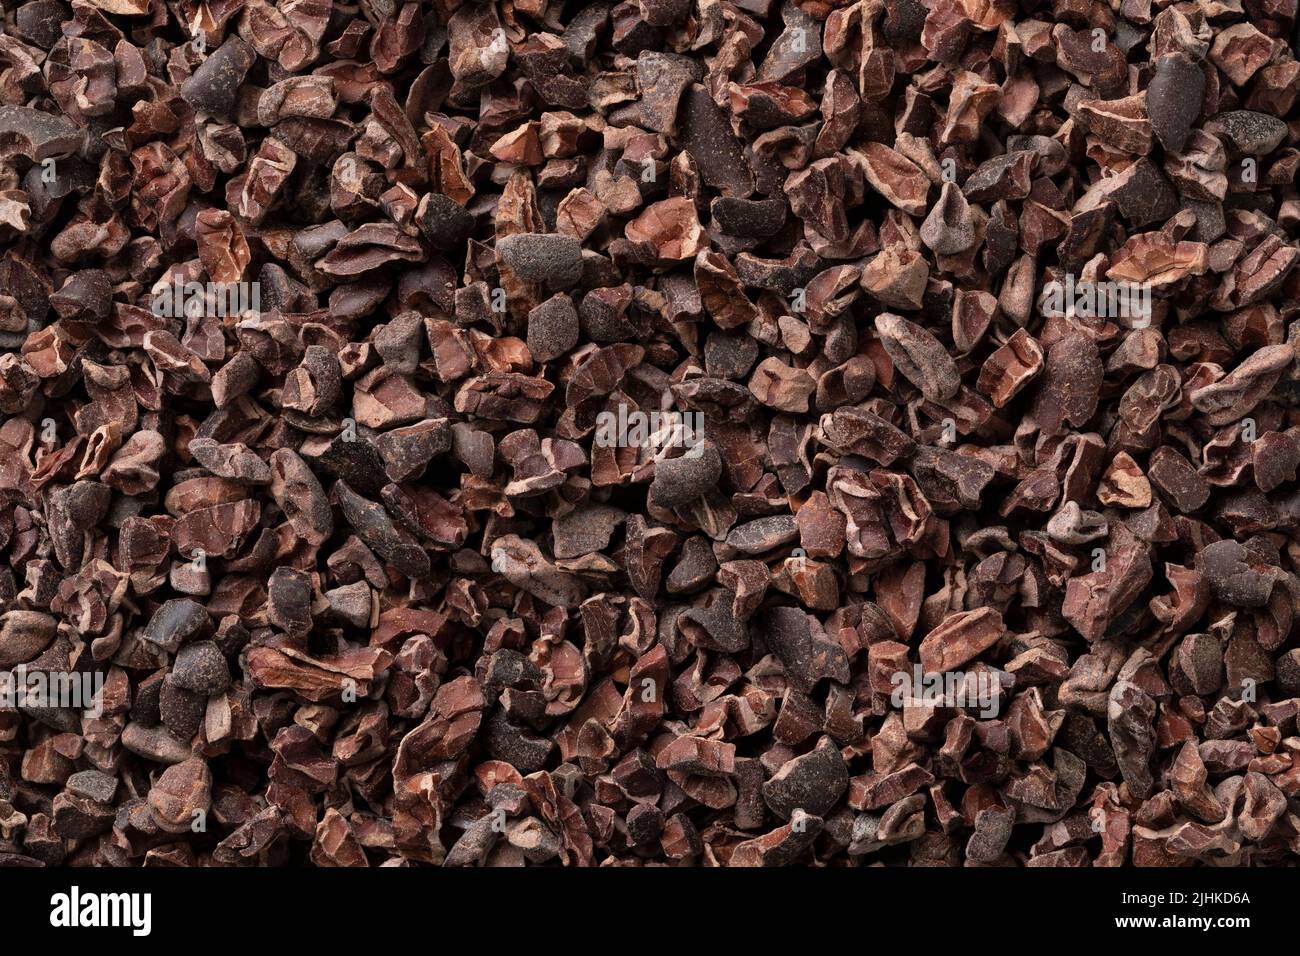 Granos de cacao, secos, machacados y fermentados, se cierran el marco completo como fondo Foto de stock